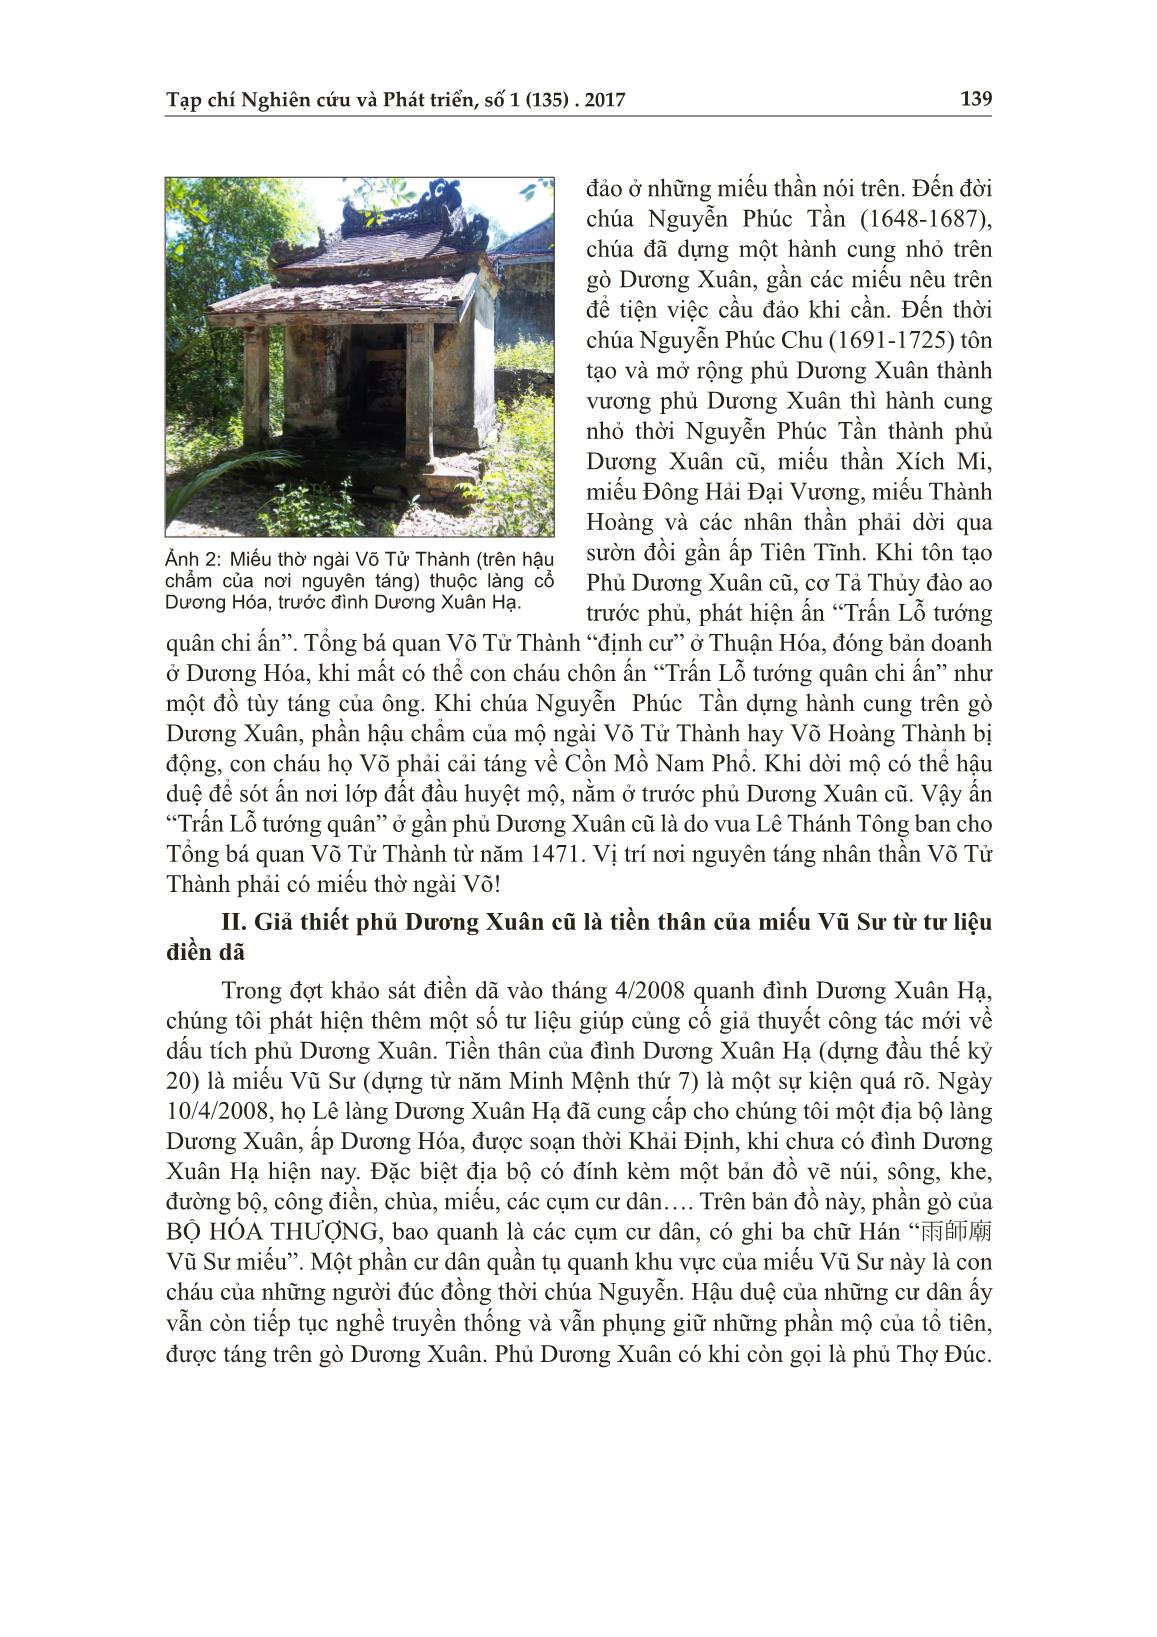 Phủ Dương Xuân: Vài chi tiết cần trao đổi với tác giả Nguyễn Đình Đính trang 6